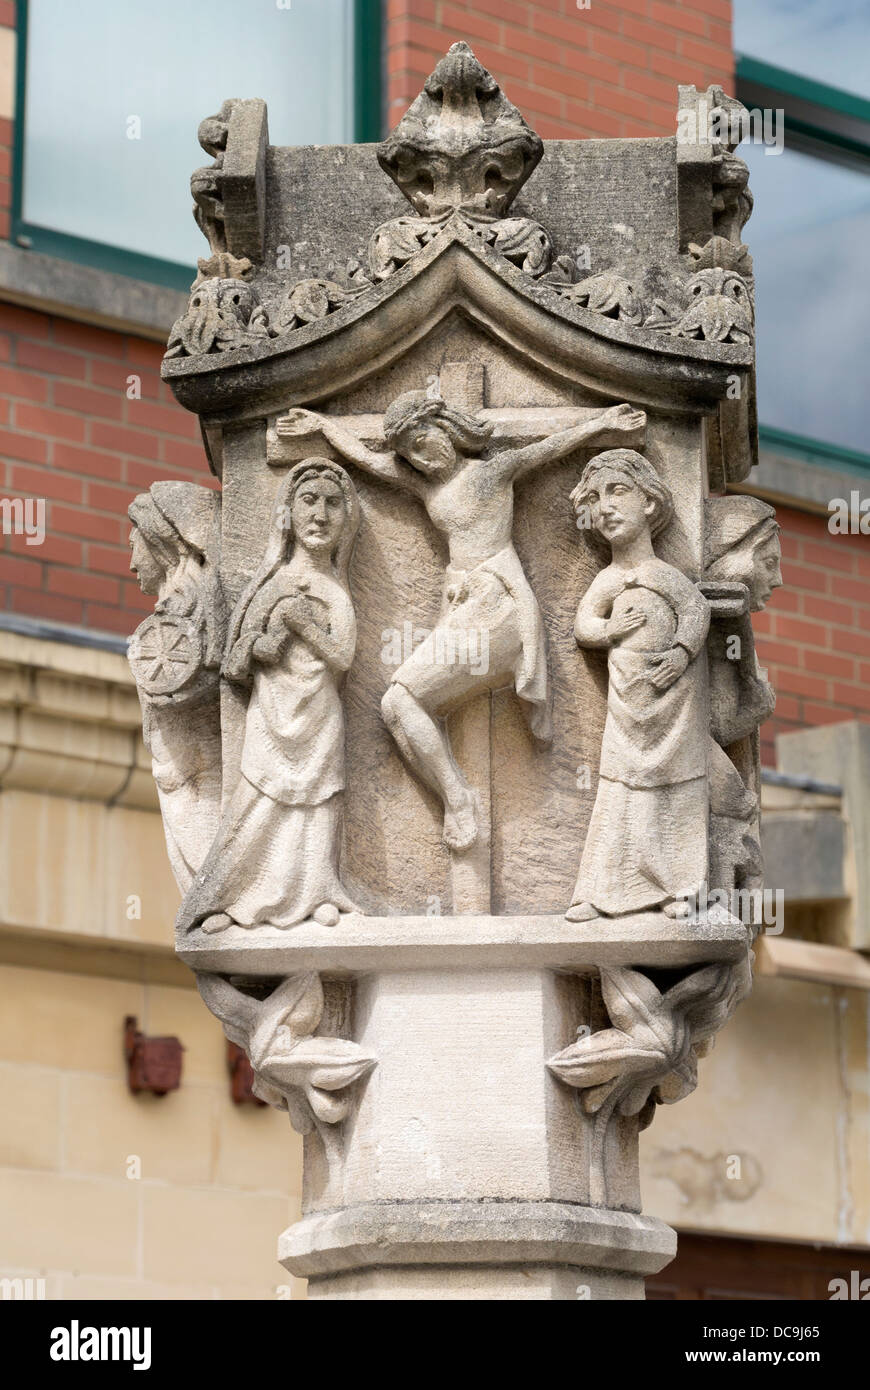 La re-création de la ville médiévale de Newport cross illustrant la crucifixion. Pays de Galles UK Banque D'Images